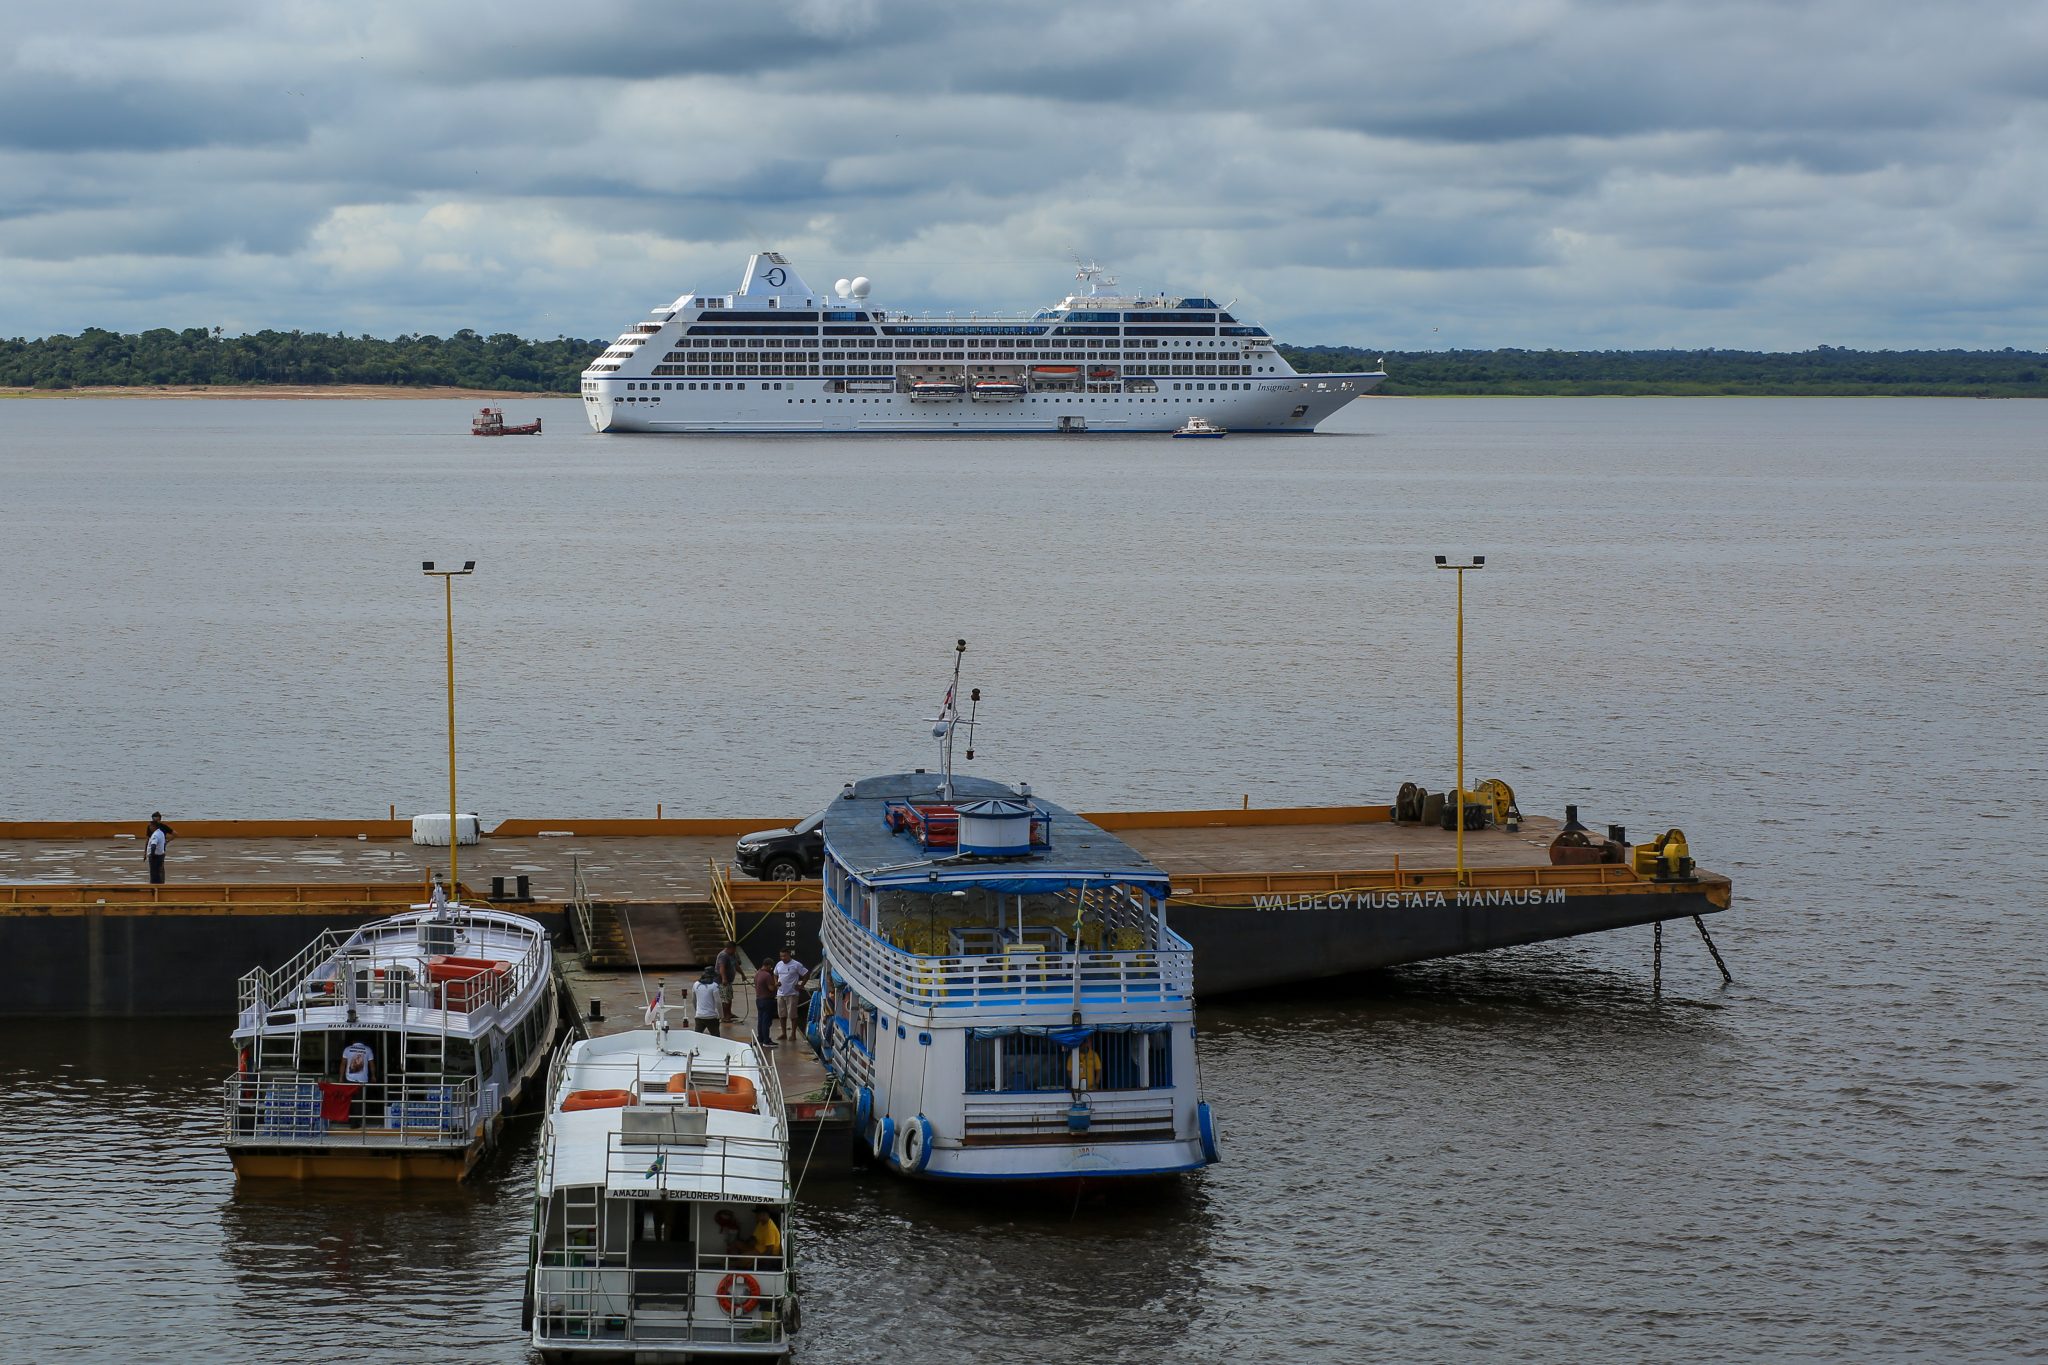 Navio MS Marina chega a Manaus com mais de 2 mil turistas